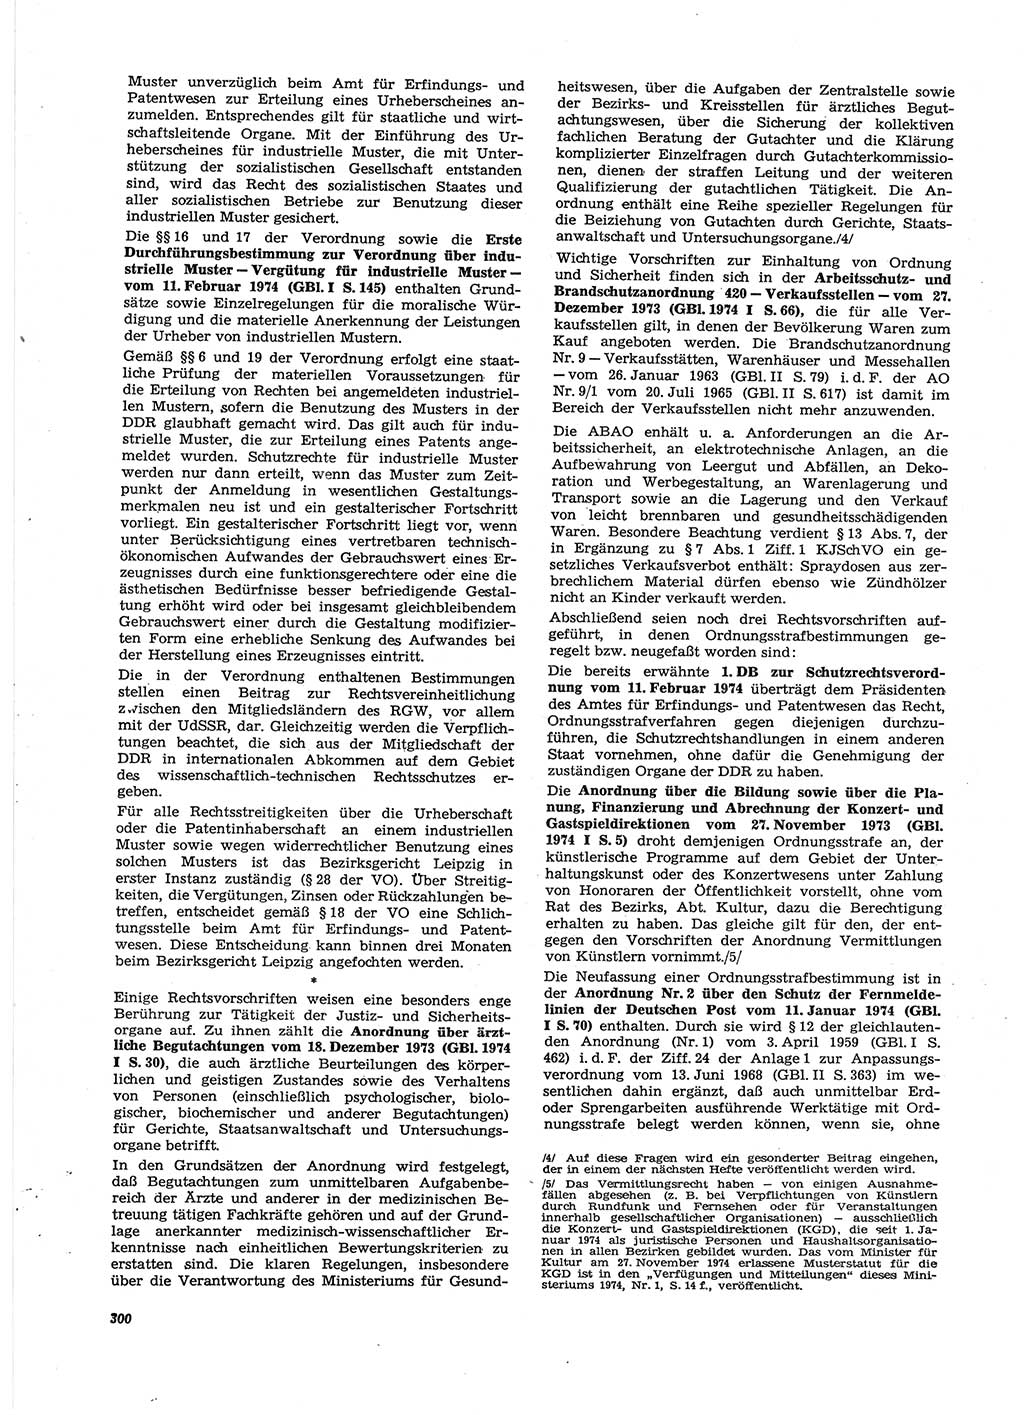 Neue Justiz (NJ), Zeitschrift für Recht und Rechtswissenschaft [Deutsche Demokratische Republik (DDR)], 28. Jahrgang 1974, Seite 300 (NJ DDR 1974, S. 300)